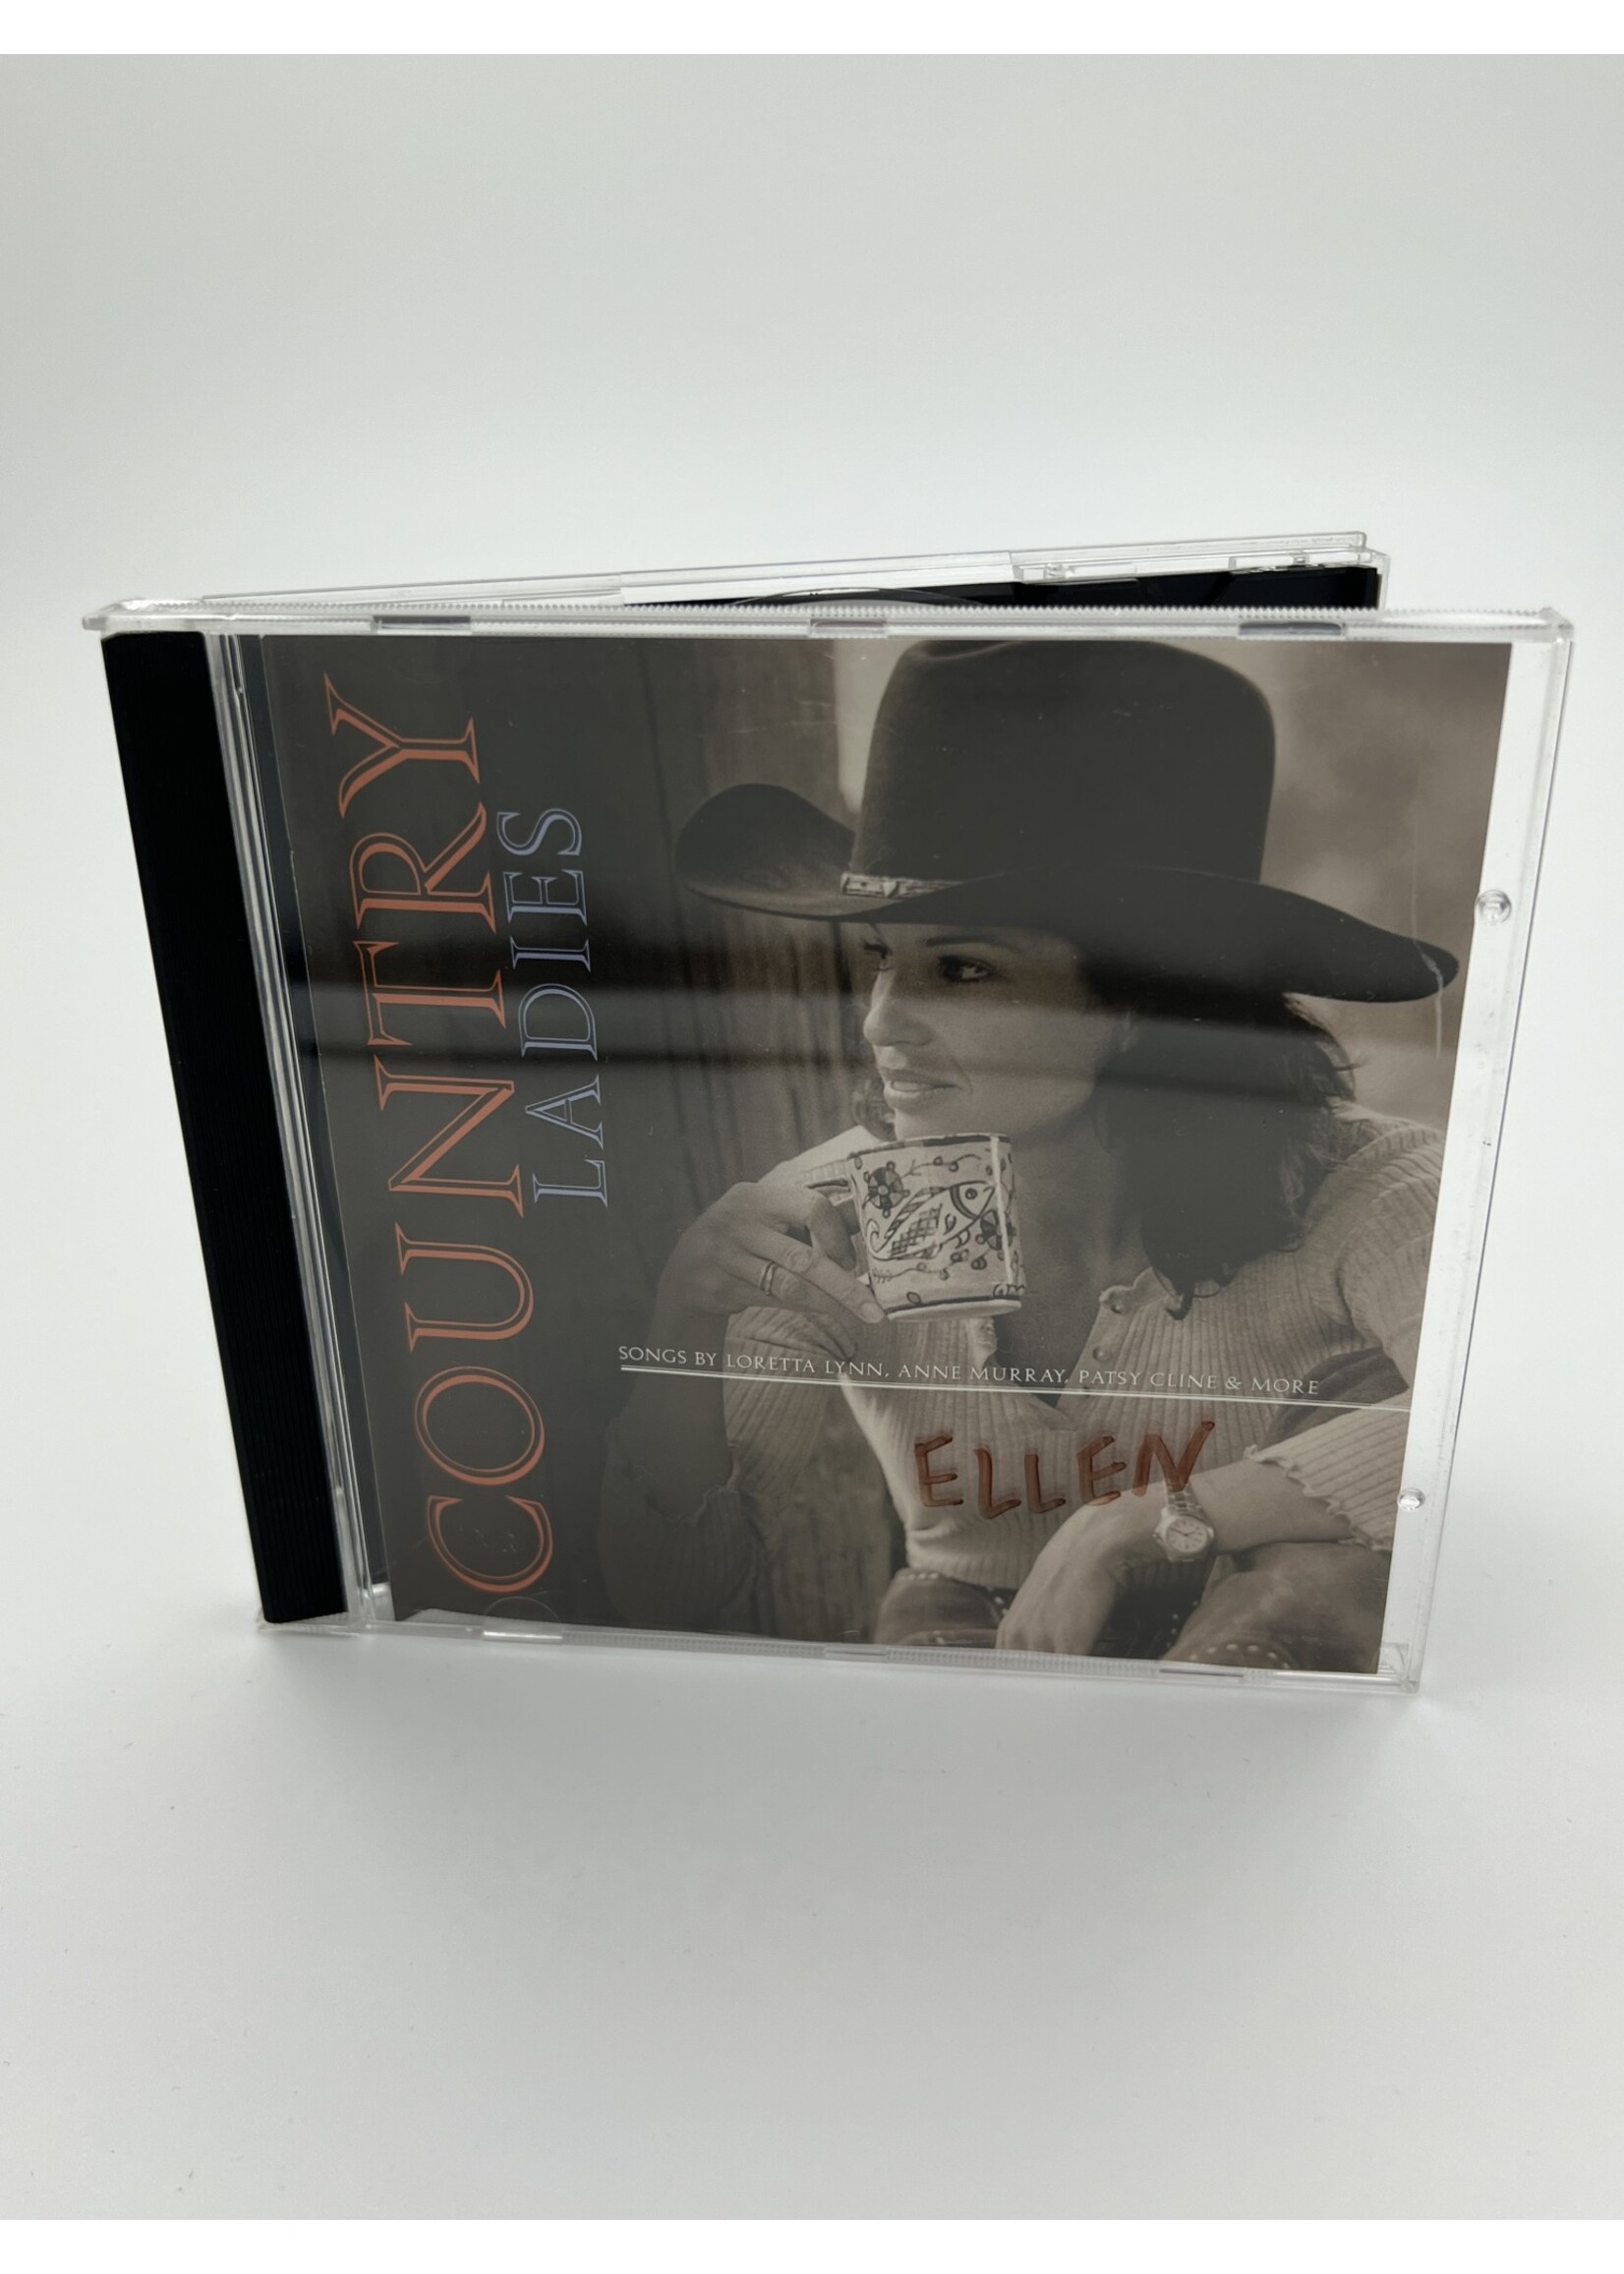 CD Country Ladies Various Artist CD